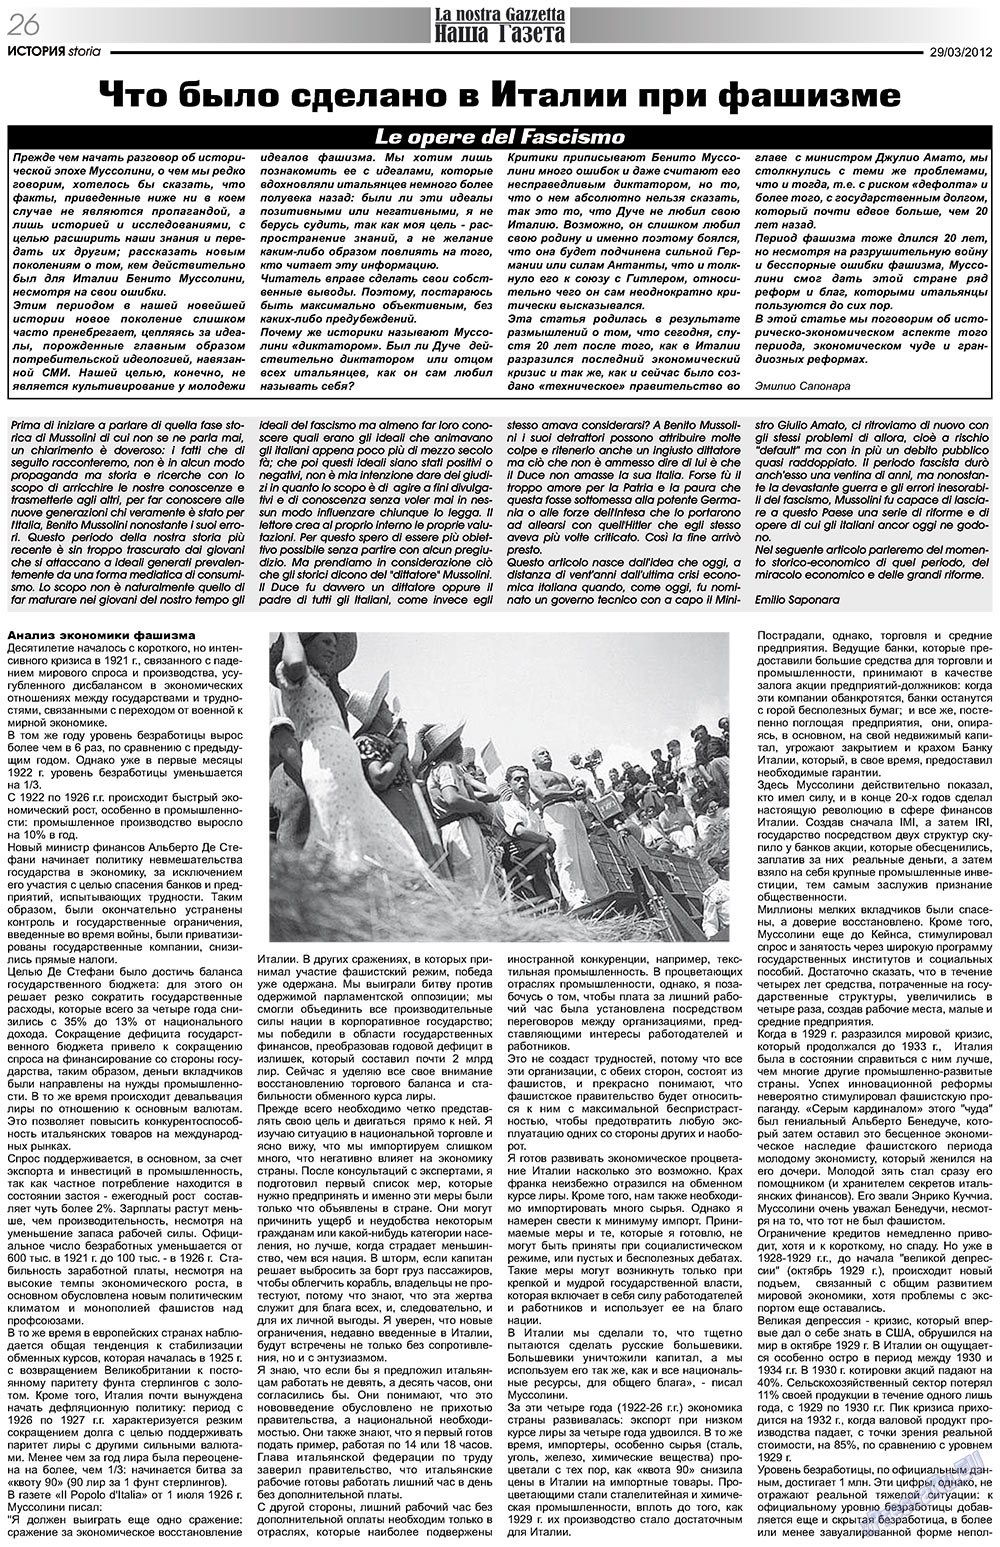 Nascha Gazeta (Zeitung). 2012 Jahr, Ausgabe 153, Seite 26